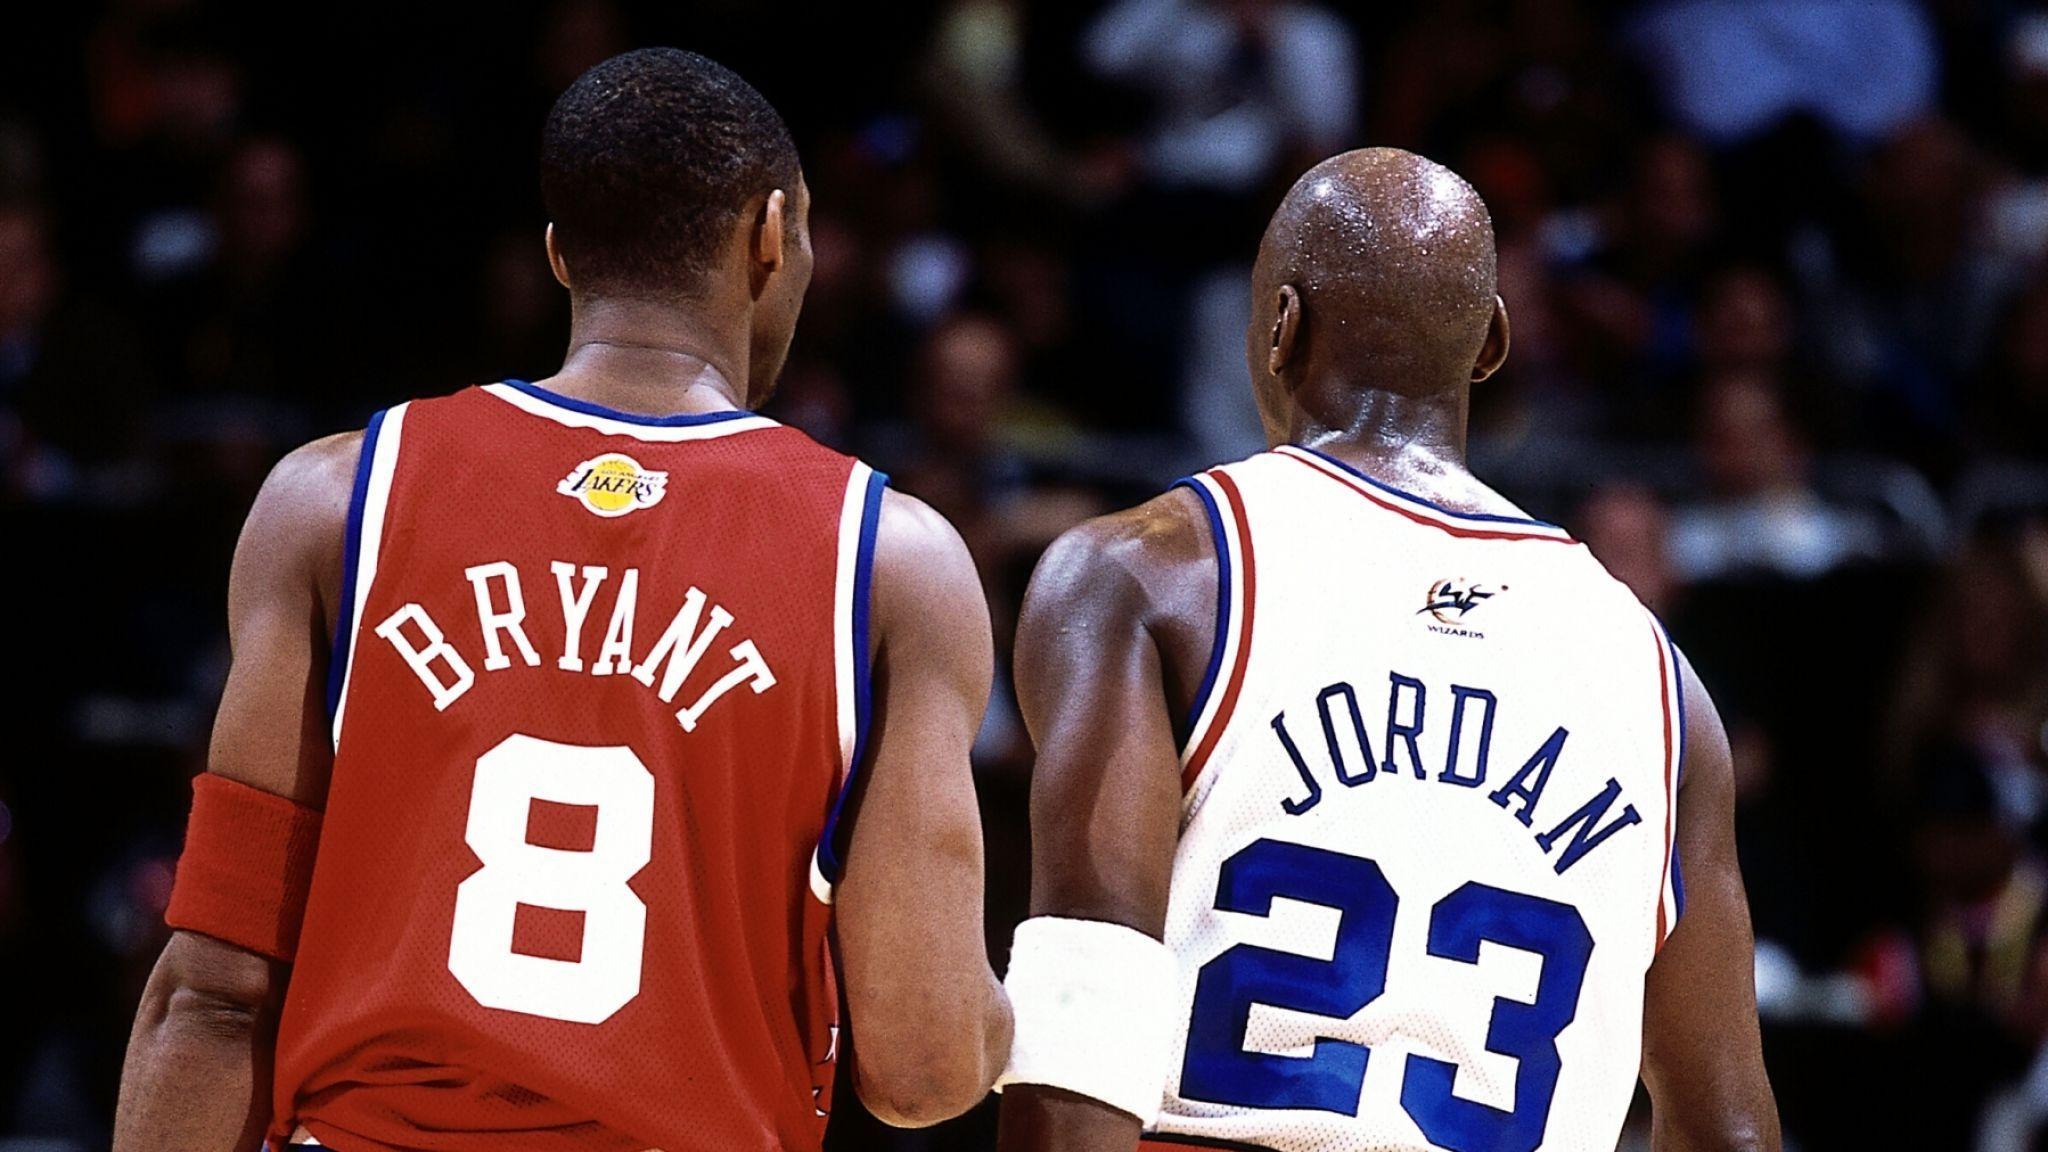 Kobe Bryant and Michael Jordan Wallpapers - Top Free Kobe ...